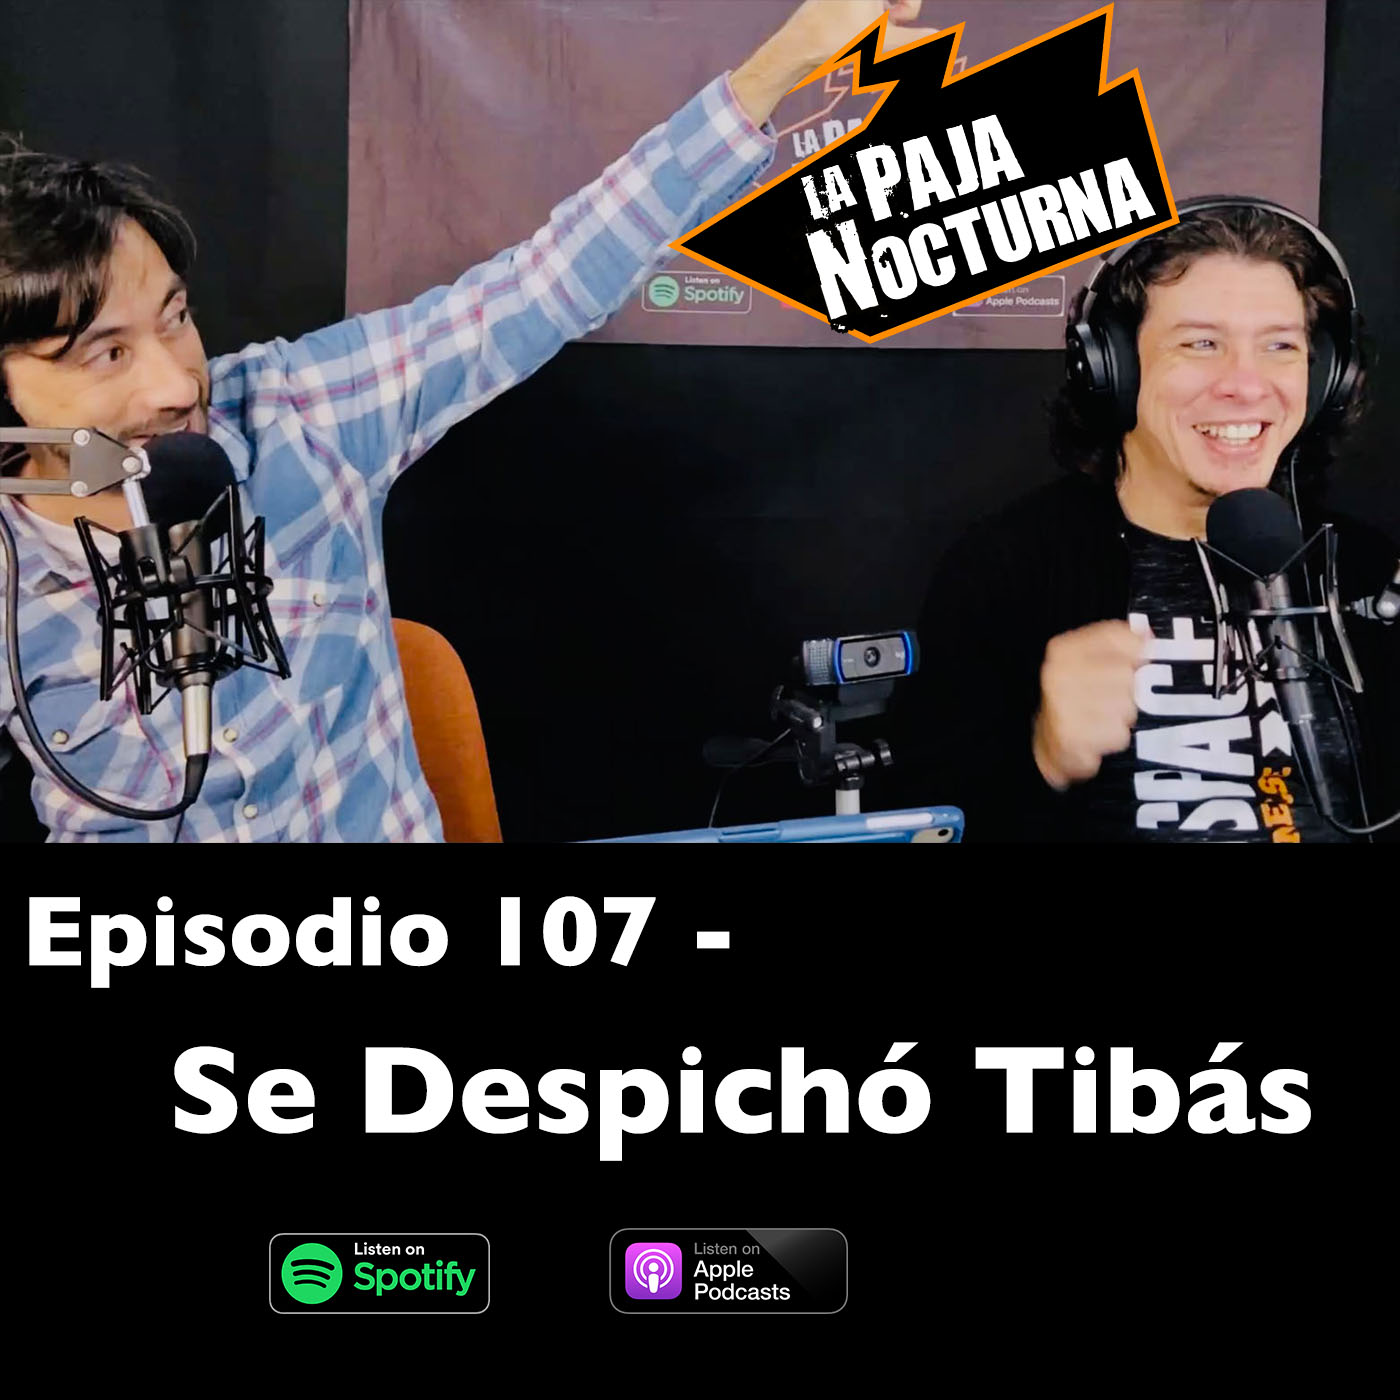 La paja nocturna podcast Episodio 107